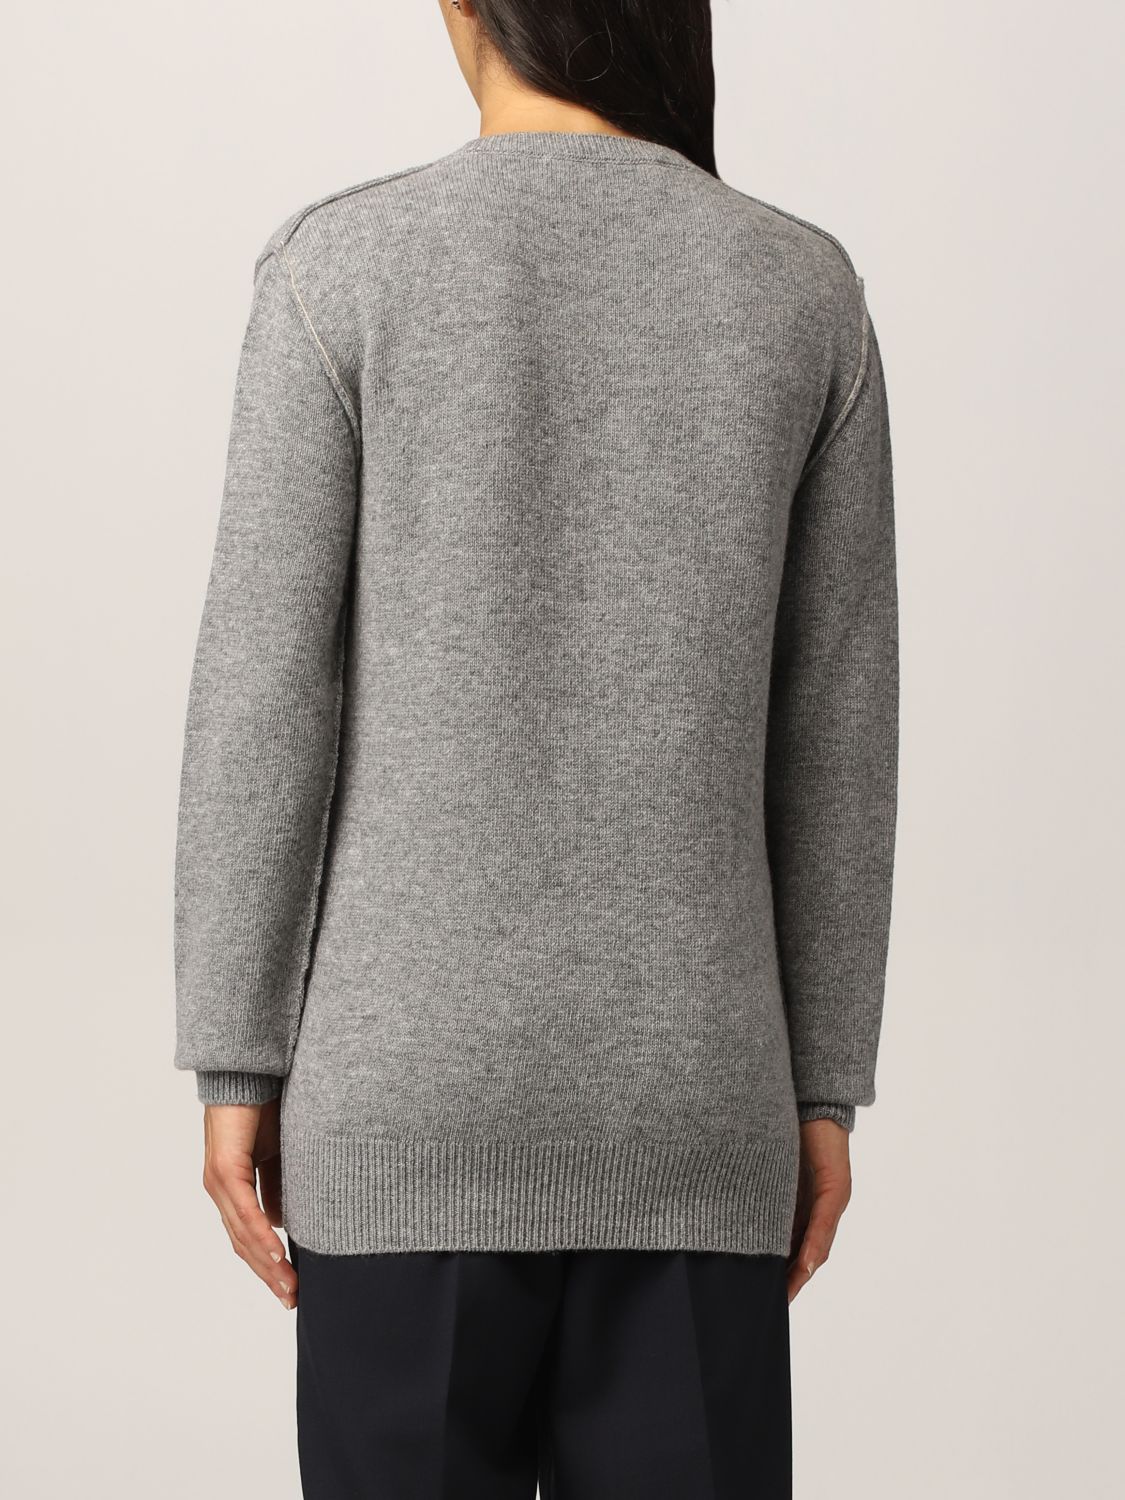 MARNI: wool sweater with logo - Grey | Sweater Marni GCMD0283Q0UFH525 ...